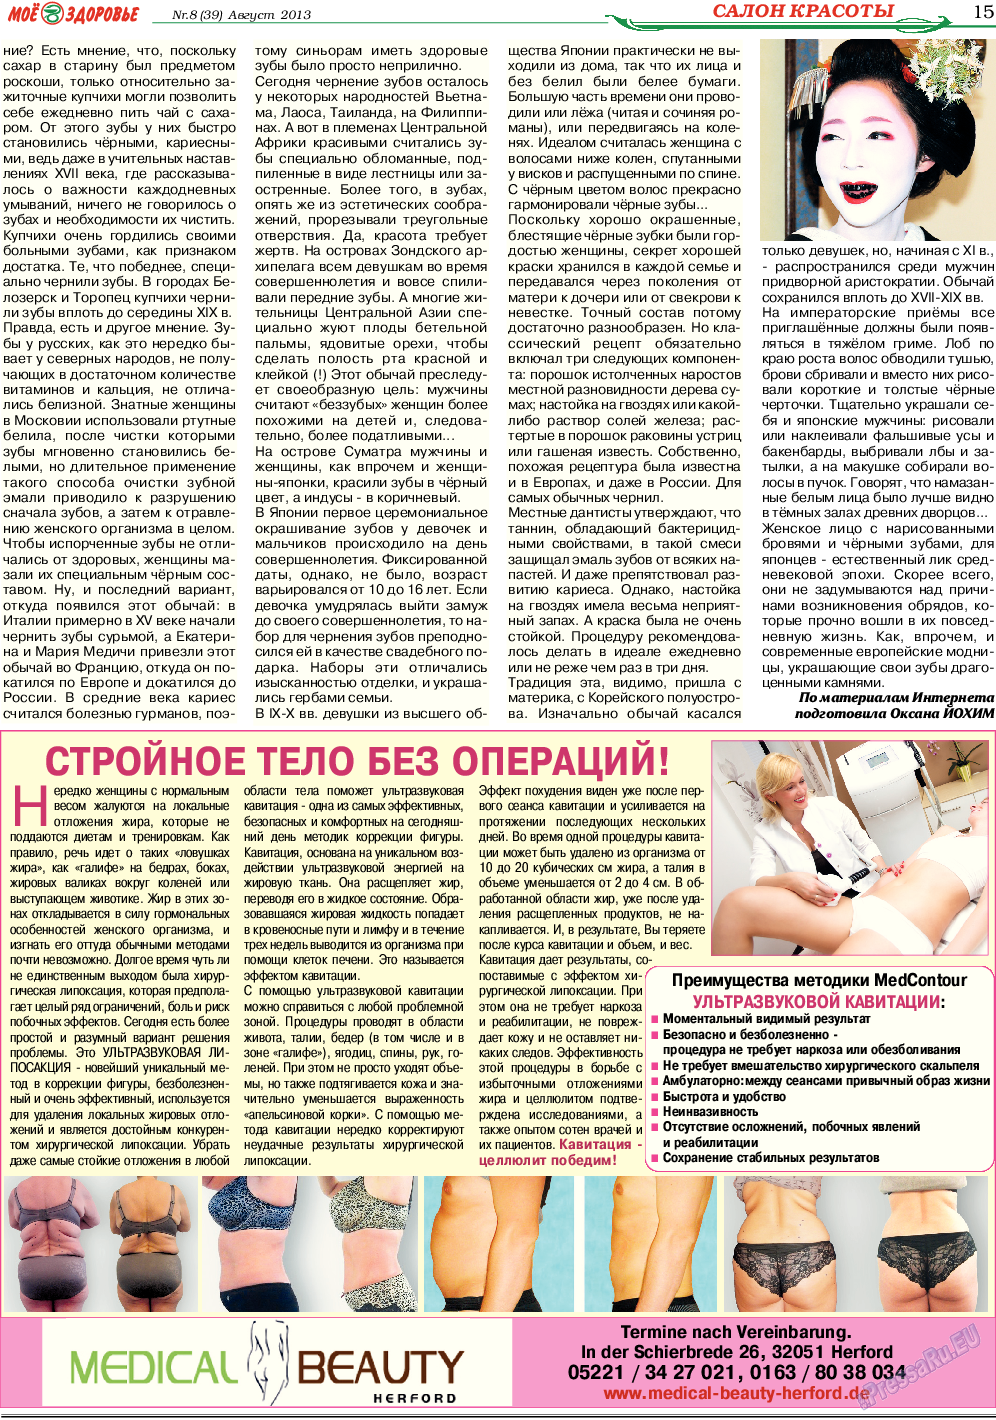 Кругозор (газета). 2013 год, номер 8, стр. 15